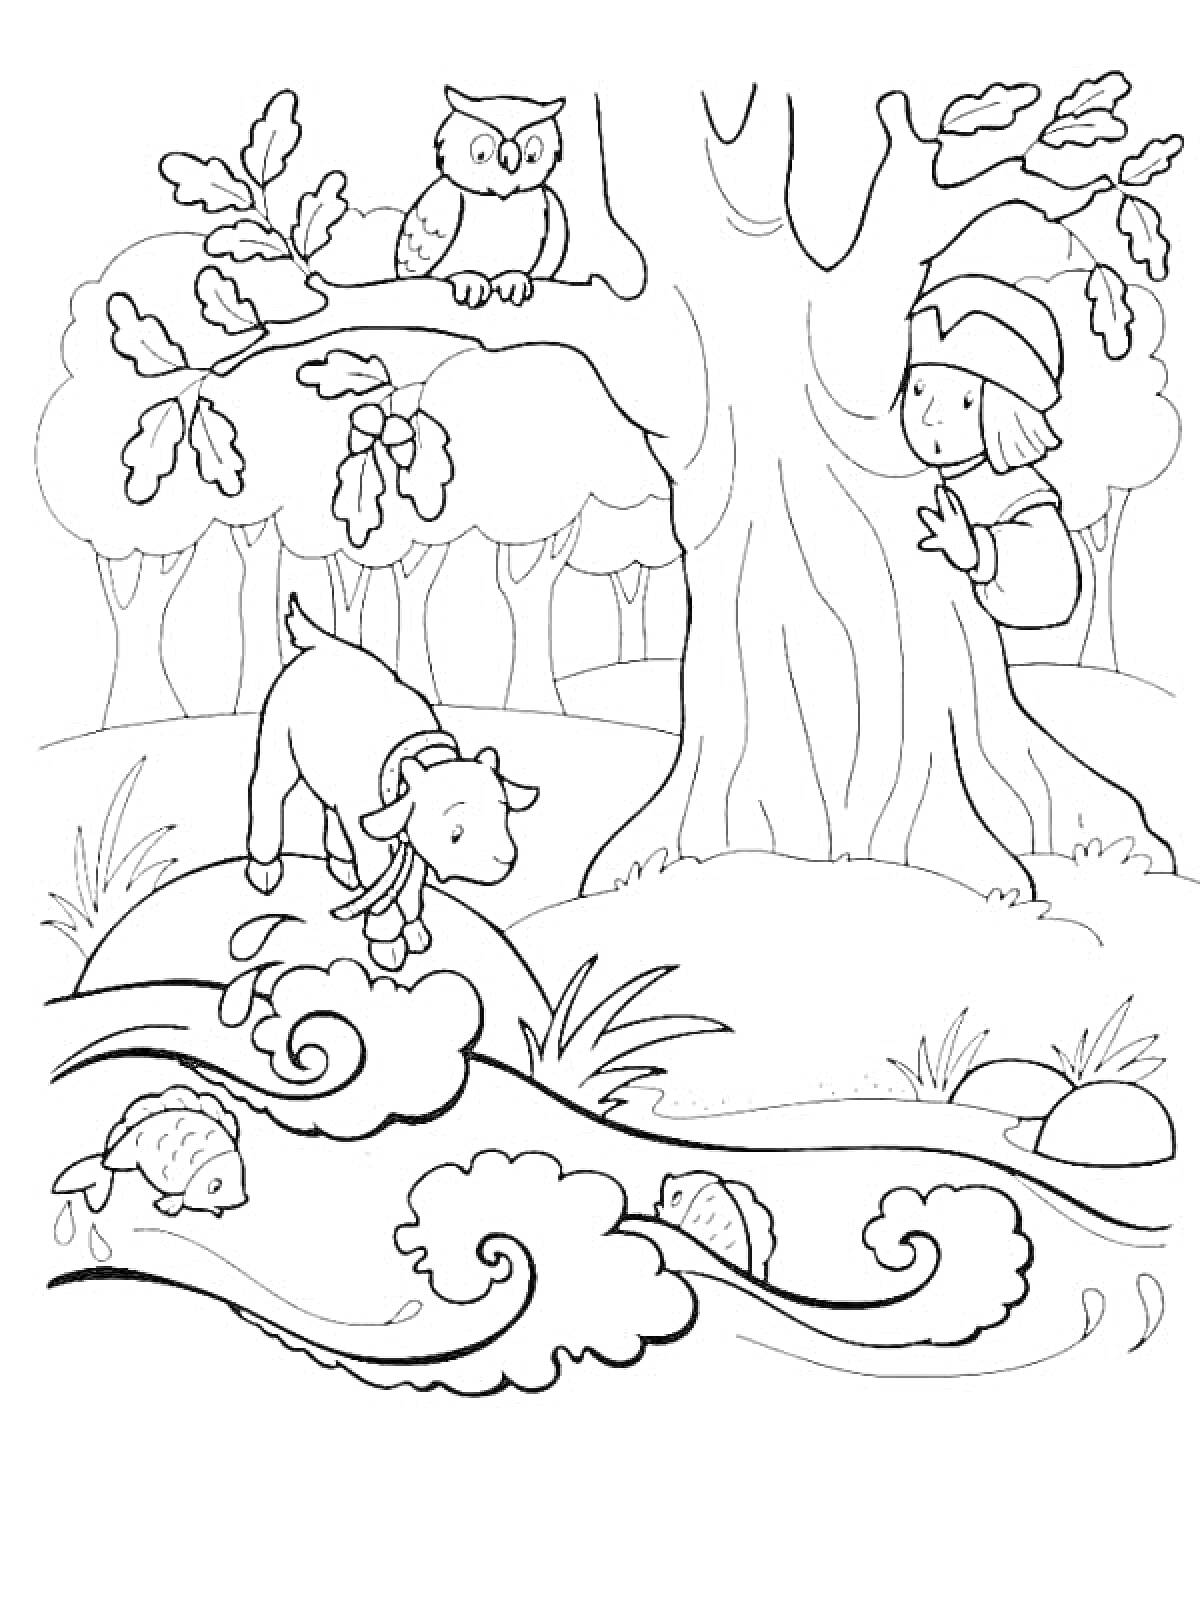 Раскраска Сестрица Аленушка и братец Иванушка у дерева, козлик пьет воду из ручья, сова на ветке, рыбы в воде